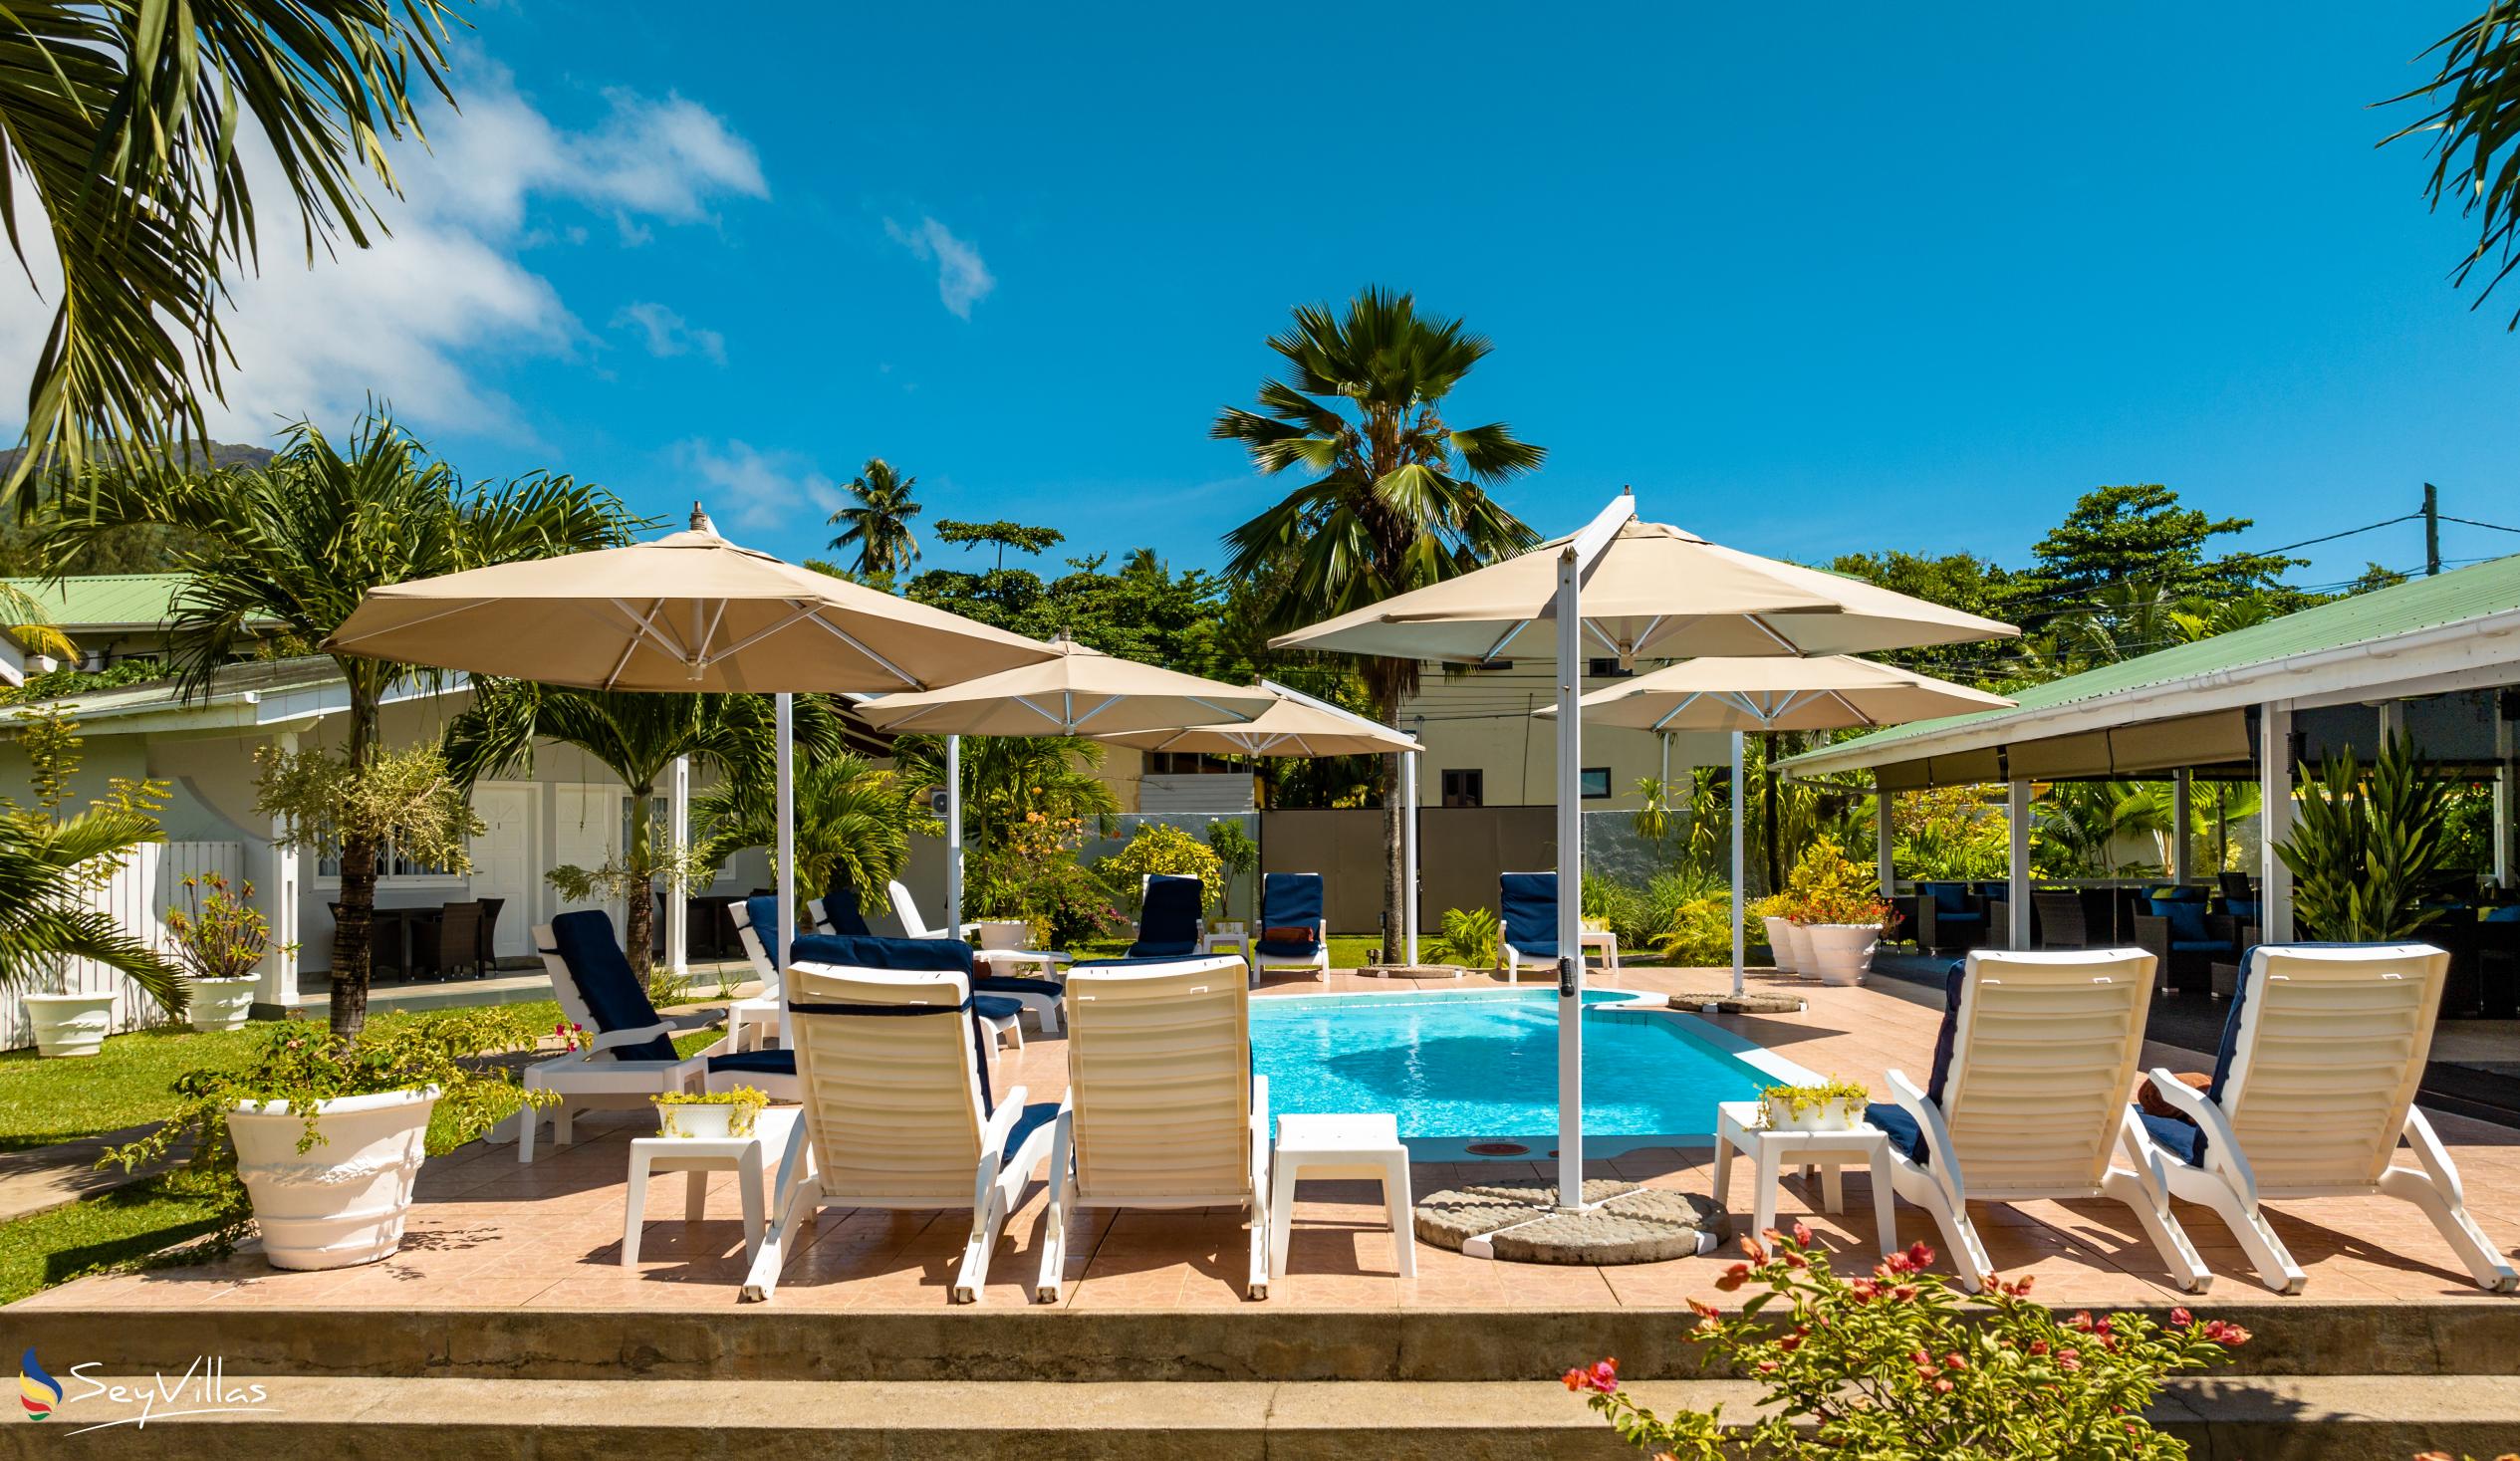 Photo 11: Hotel La Roussette - Outdoor area - Mahé (Seychelles)